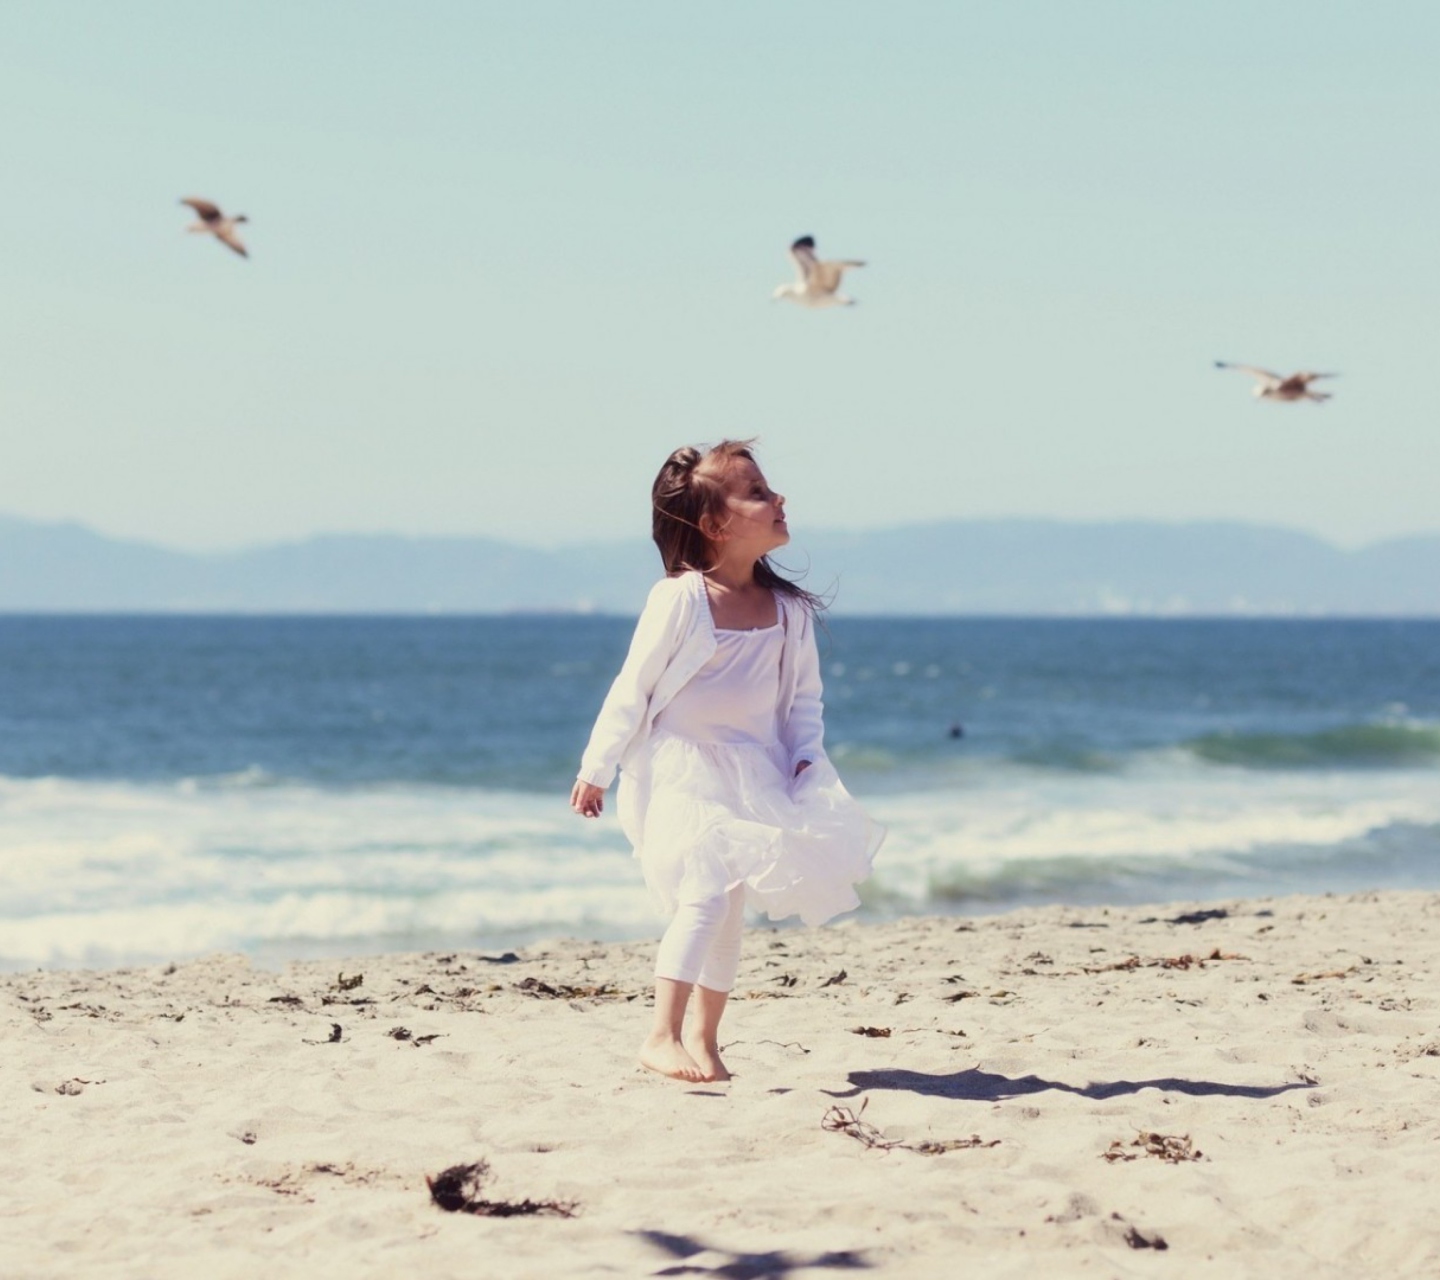 Little Girl And Seagulls On Beach wallpaper 1440x1280